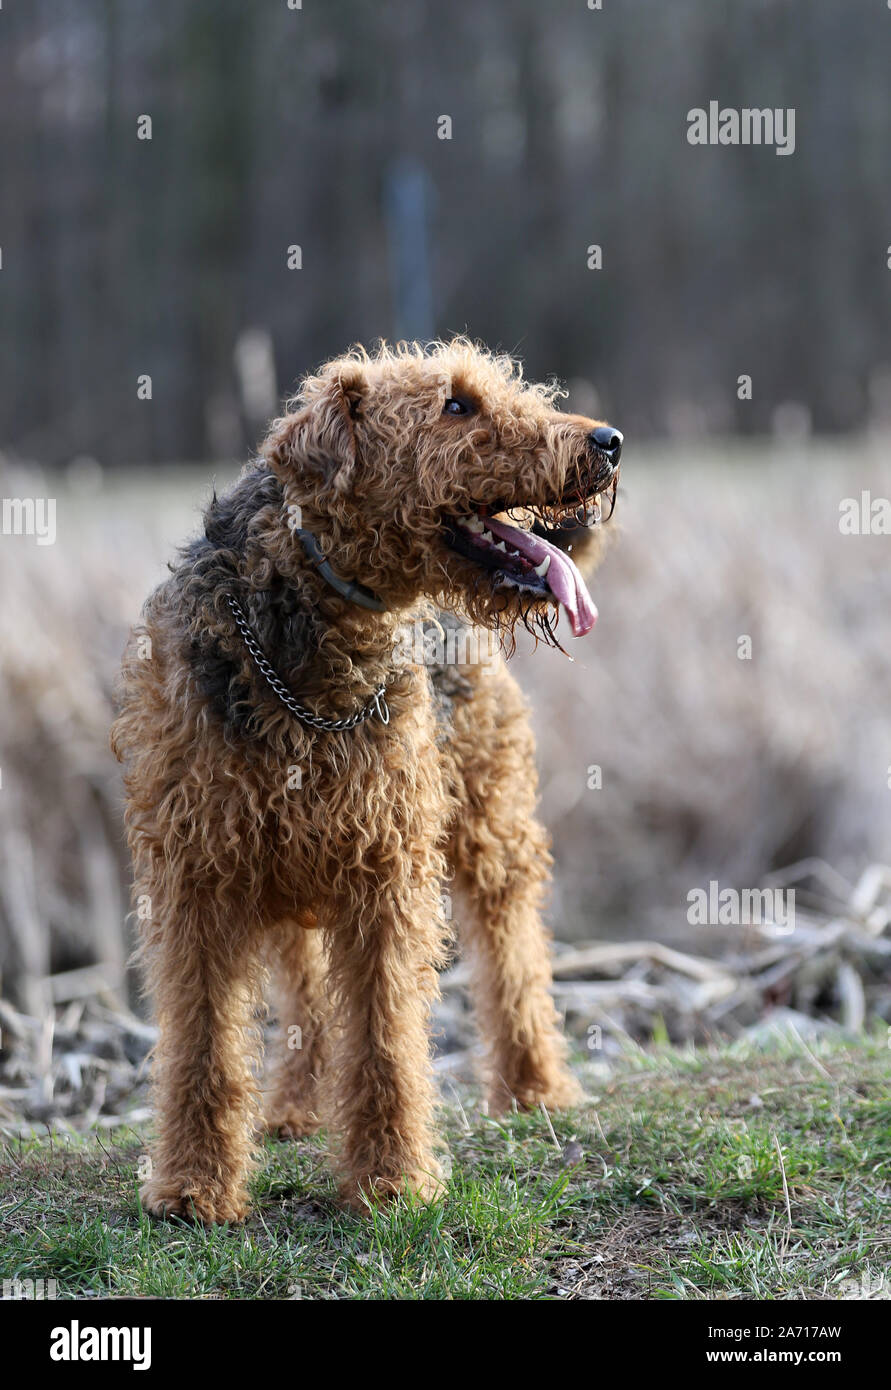 Hund auf Gras, Airedale Terrier, portrait Hund, Hund im Park Stockfoto